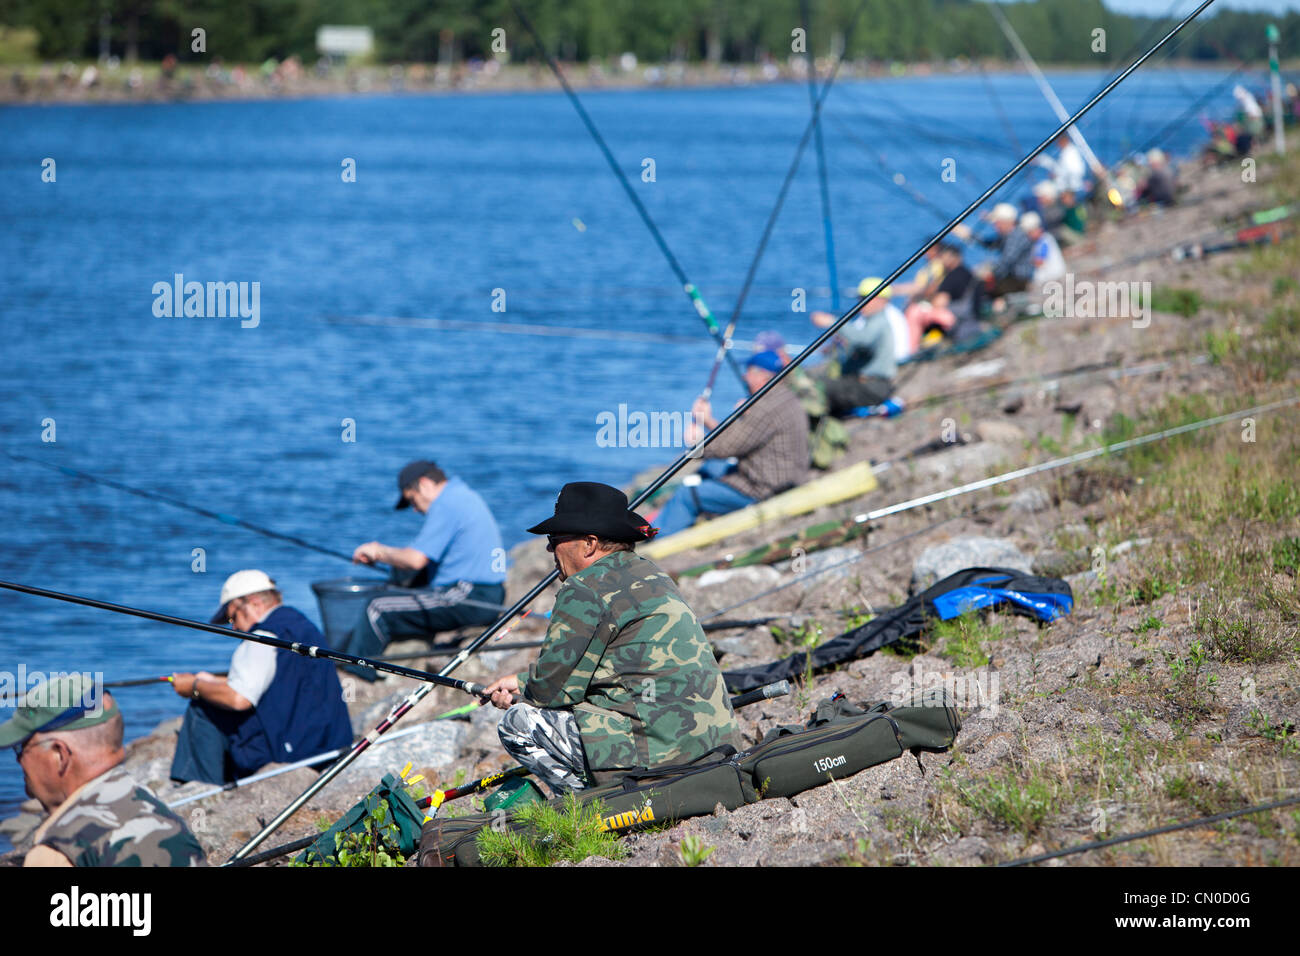 Championnat national finlandais de la pêche à la ligne 2011 à Kansola Canal de Saimaa. Série d'anciens combattants (60 +). , Finlande Banque D'Images